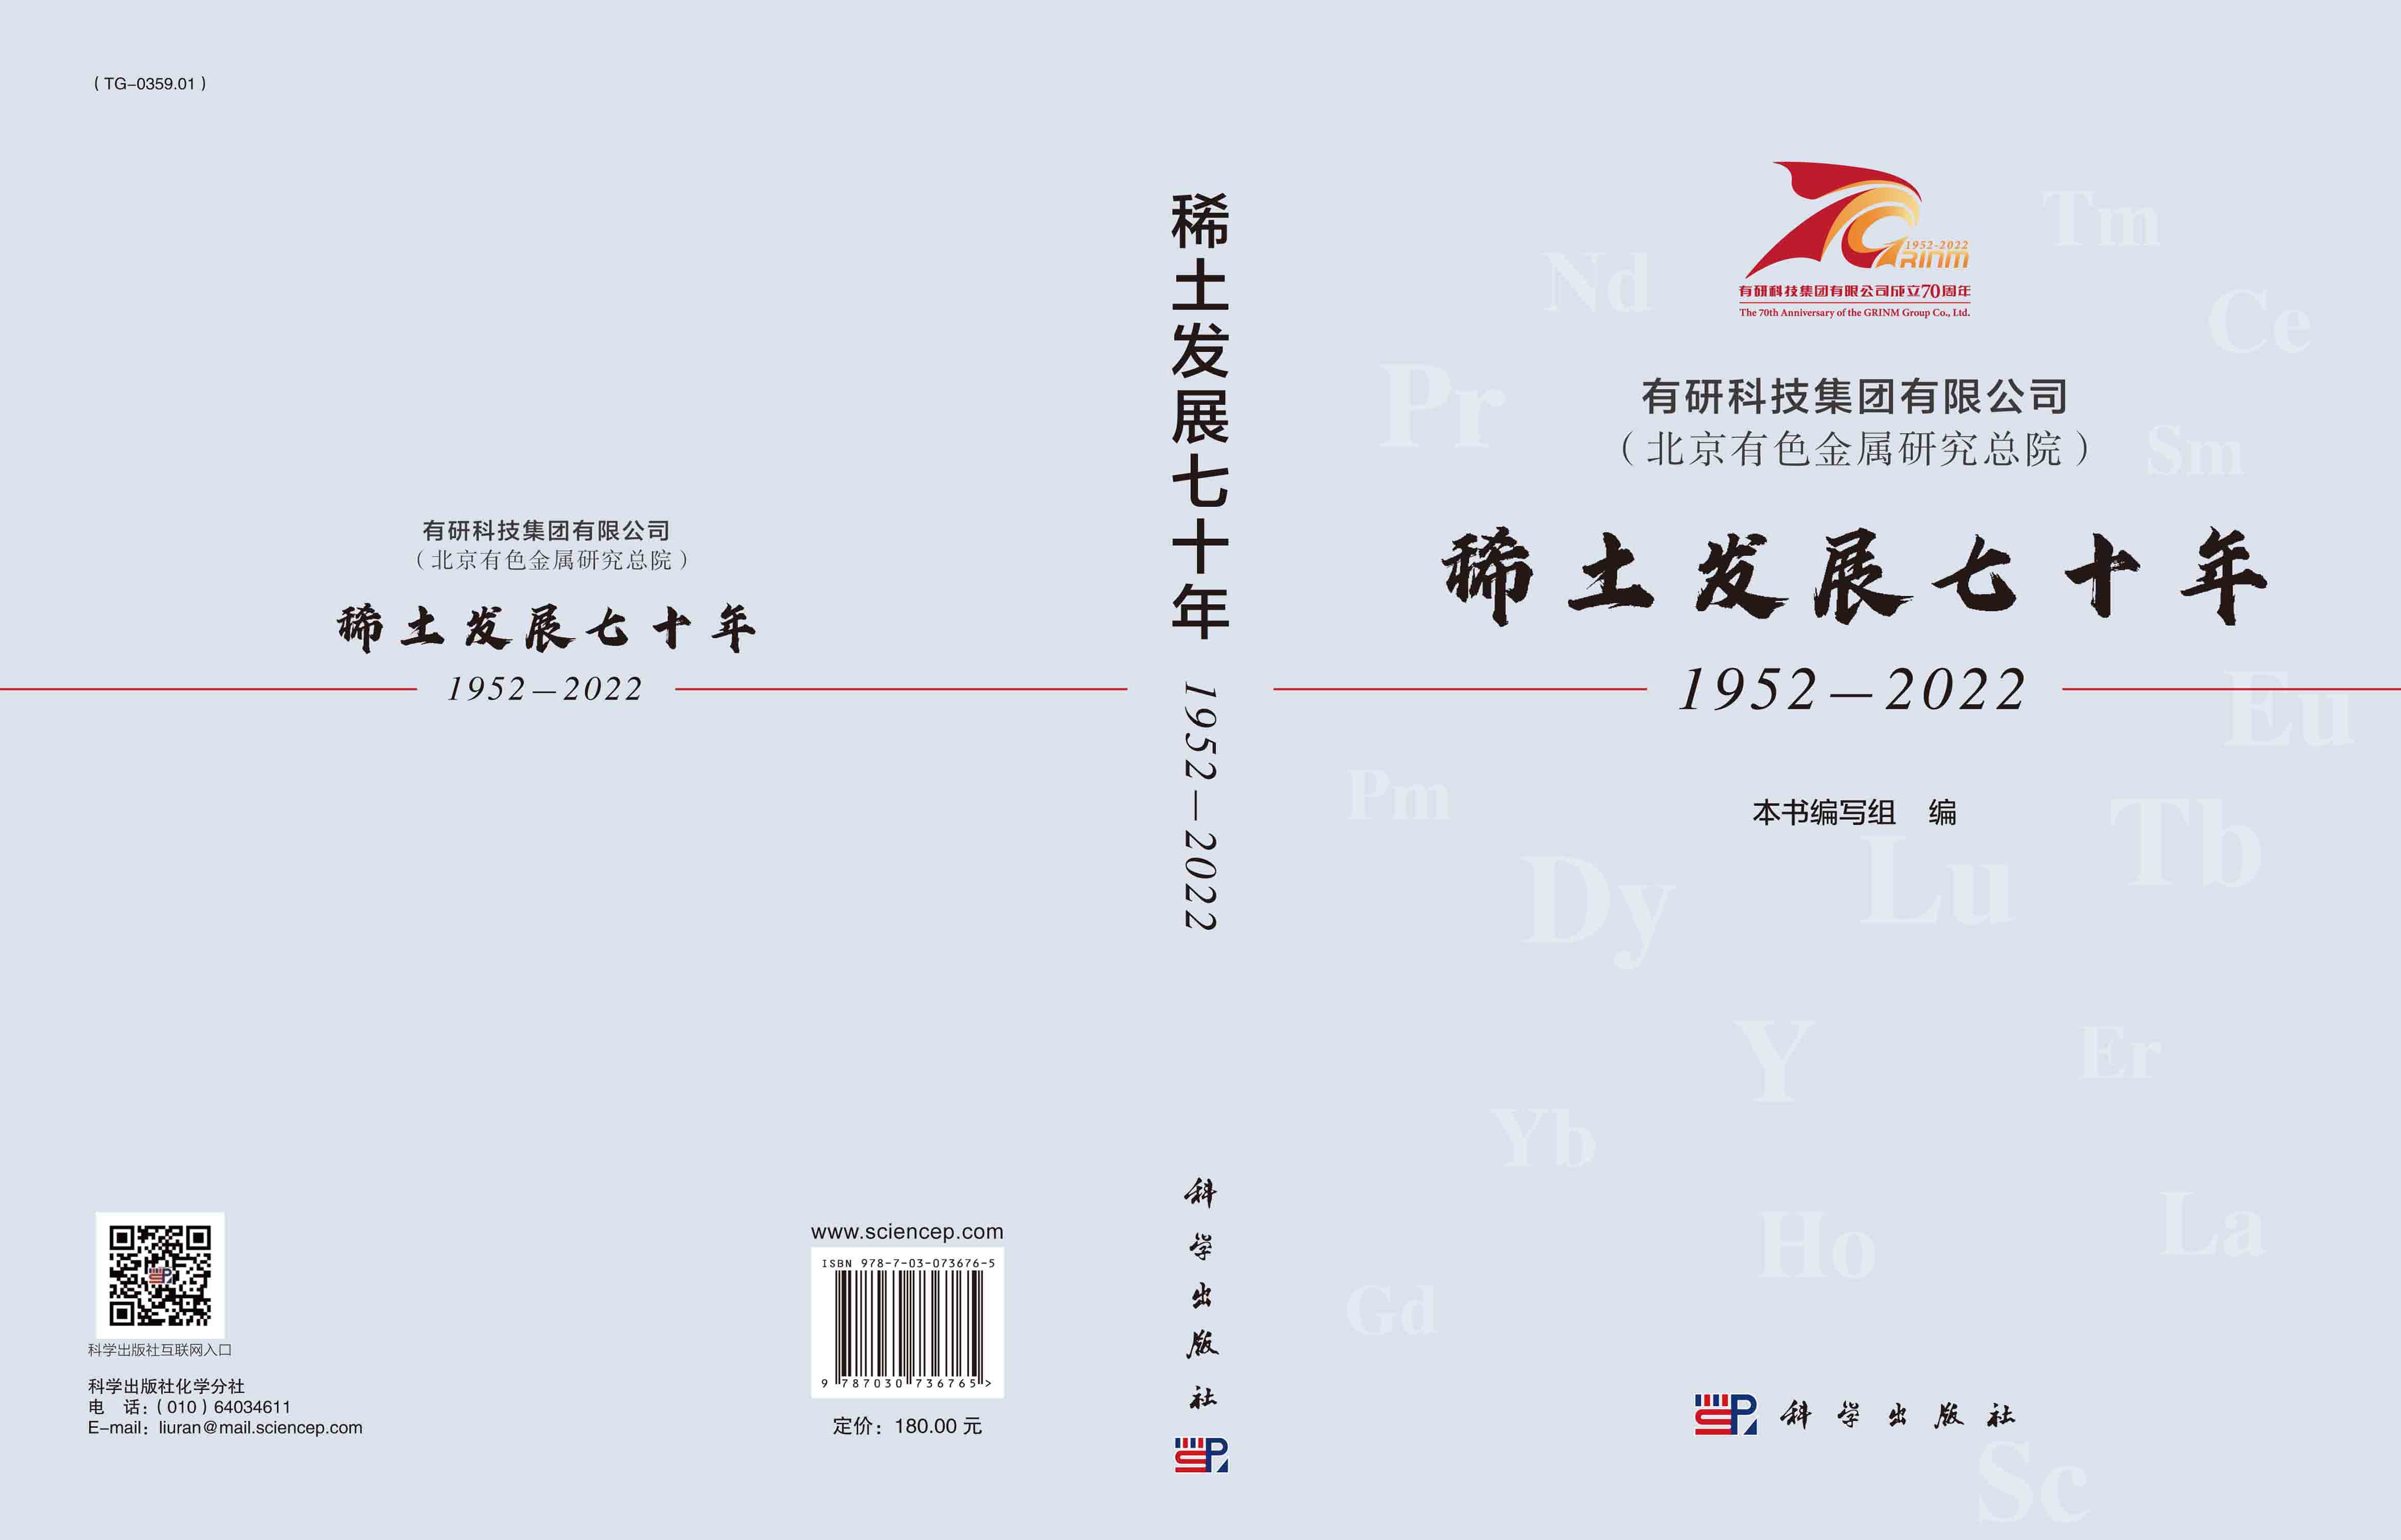 有研科技集团有限公司（北京有色金属研究总院）稀土发展七十年：1952-2022